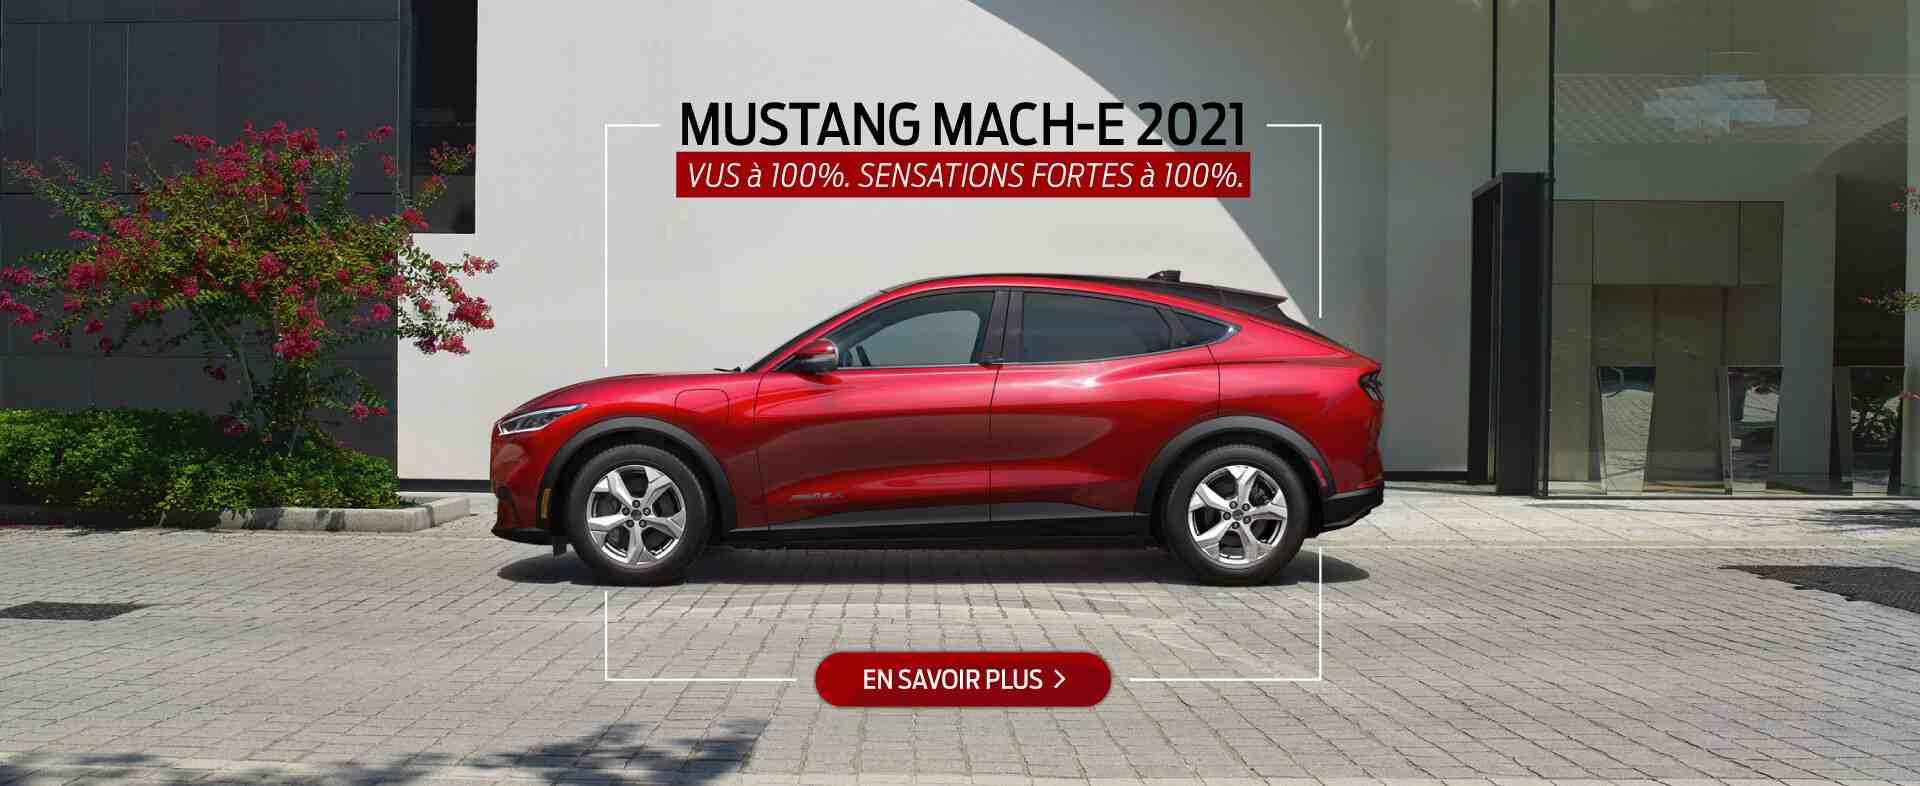 Mustang Mach-E 2021